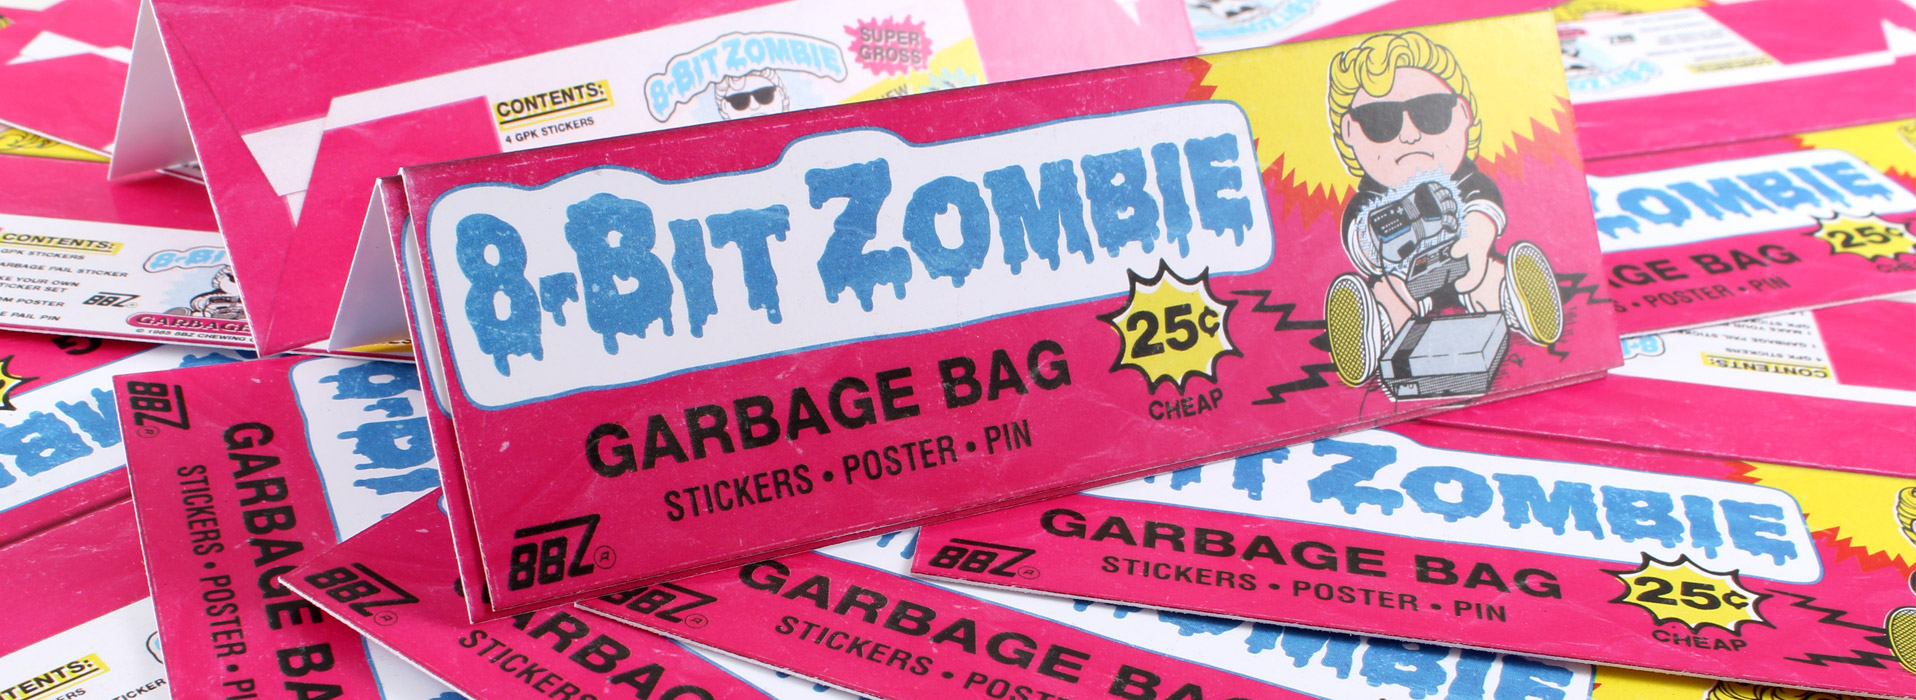 8-Bit Zombie Sticker Packs